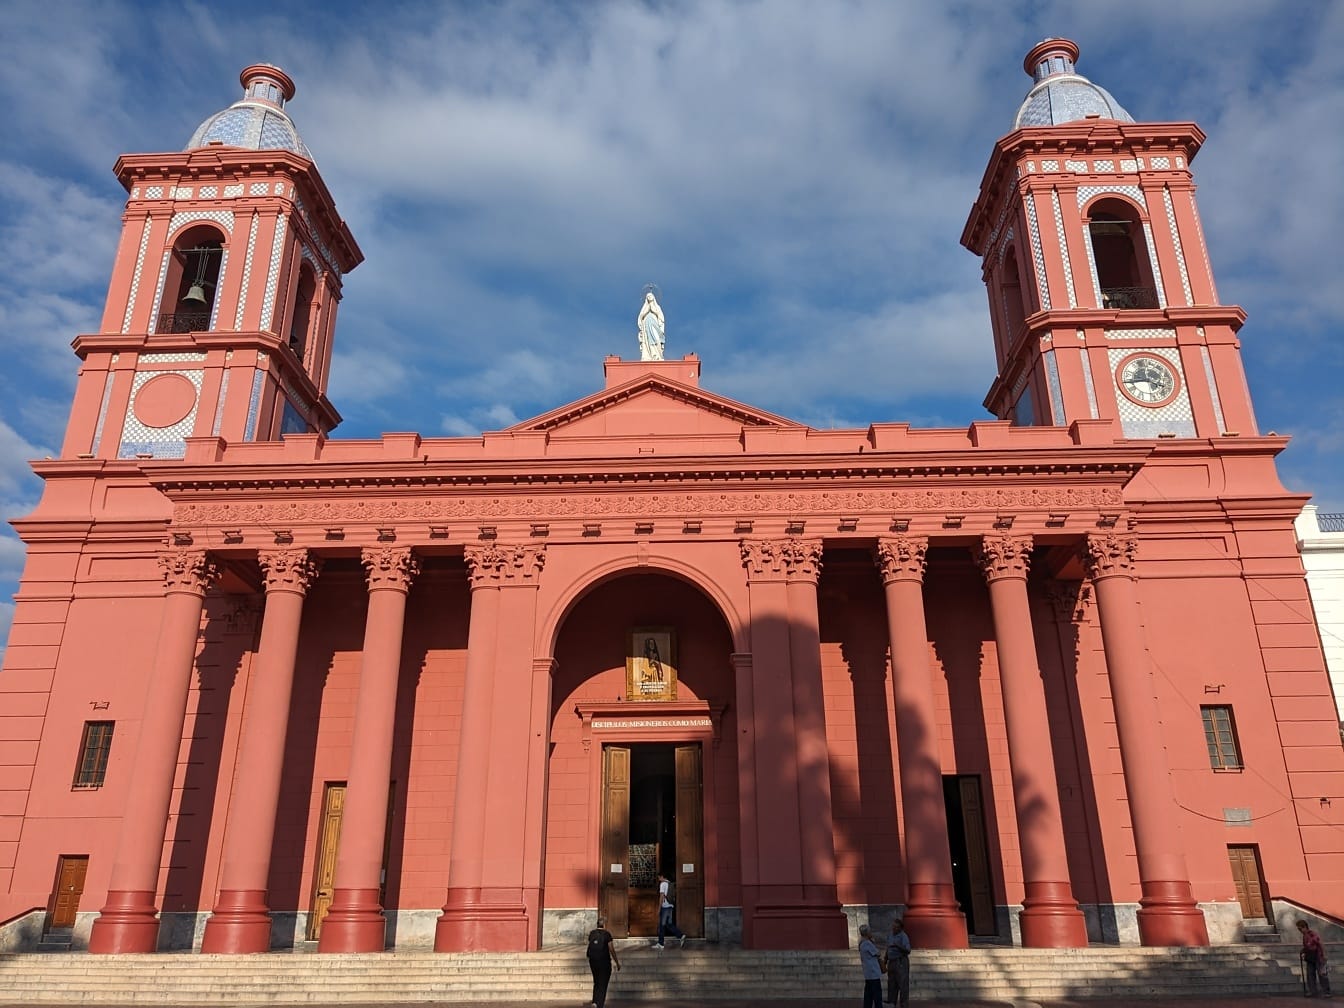 Katedral Basilika Our Lady of the Valley di Catamarca di Argentina dengan dua menara bergaya arsitektur kolonial